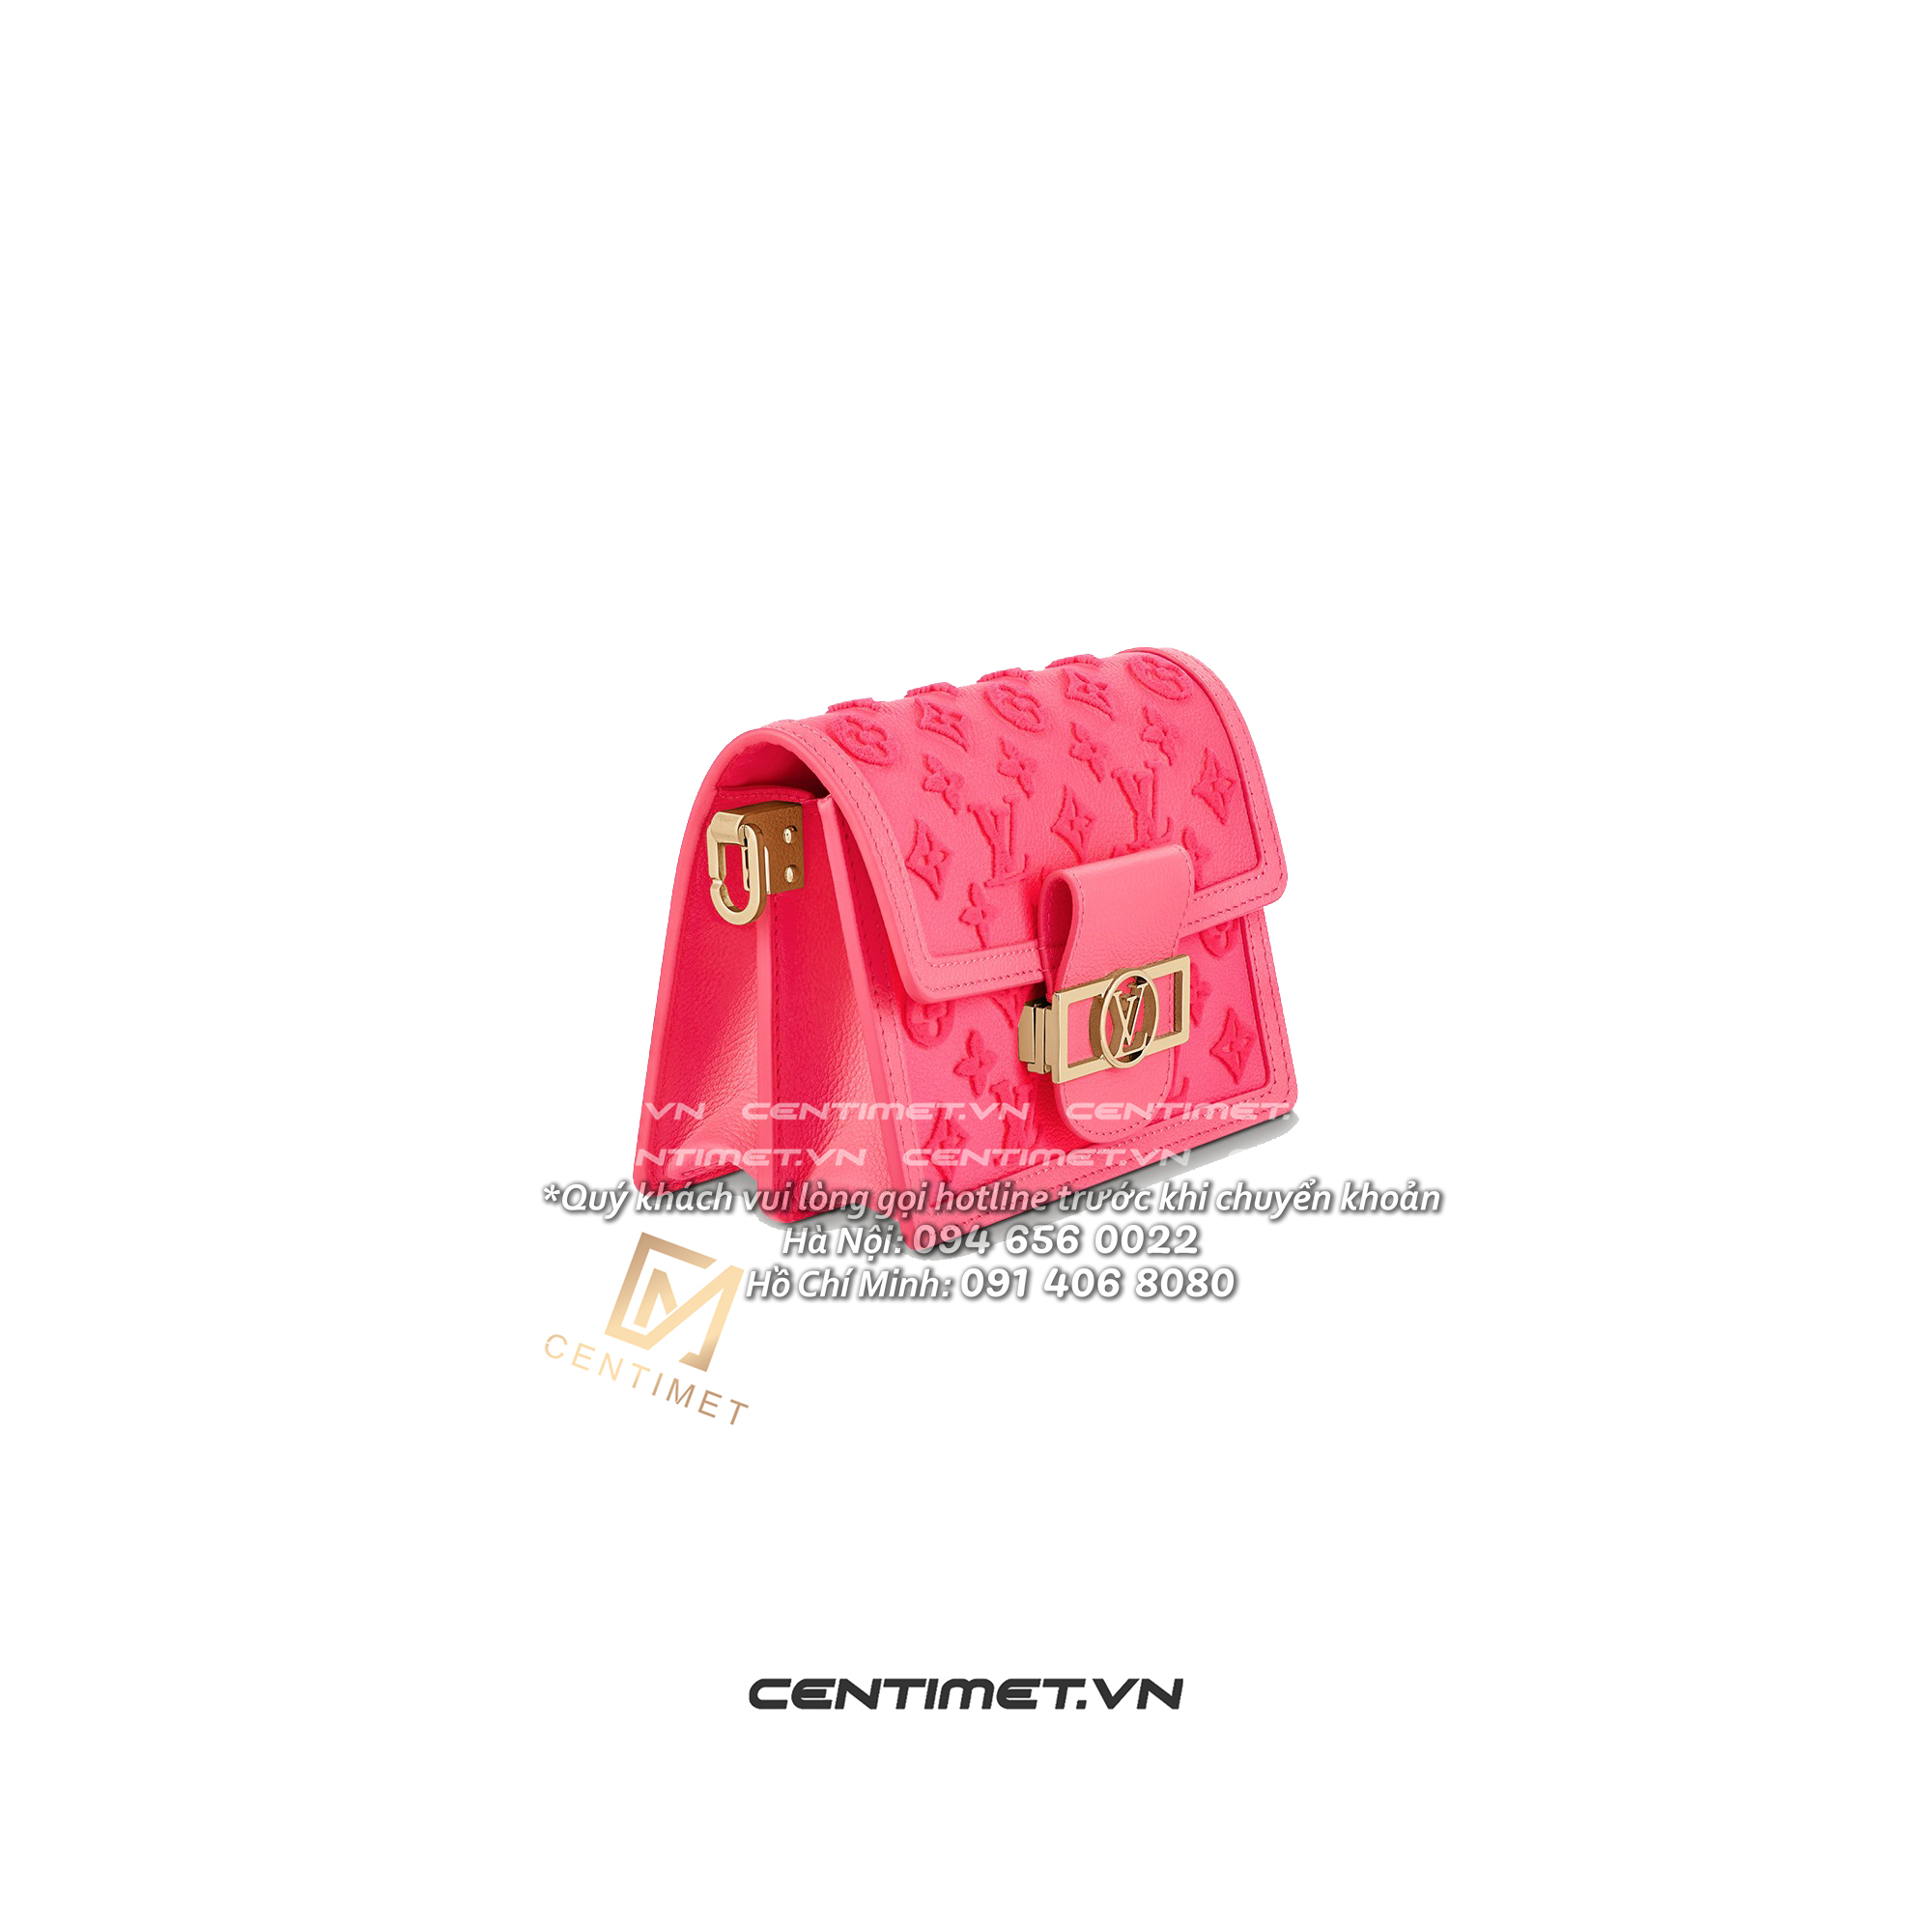 M20747 Louis Vuitton Rose Fluo Mini Dauphine Handbag